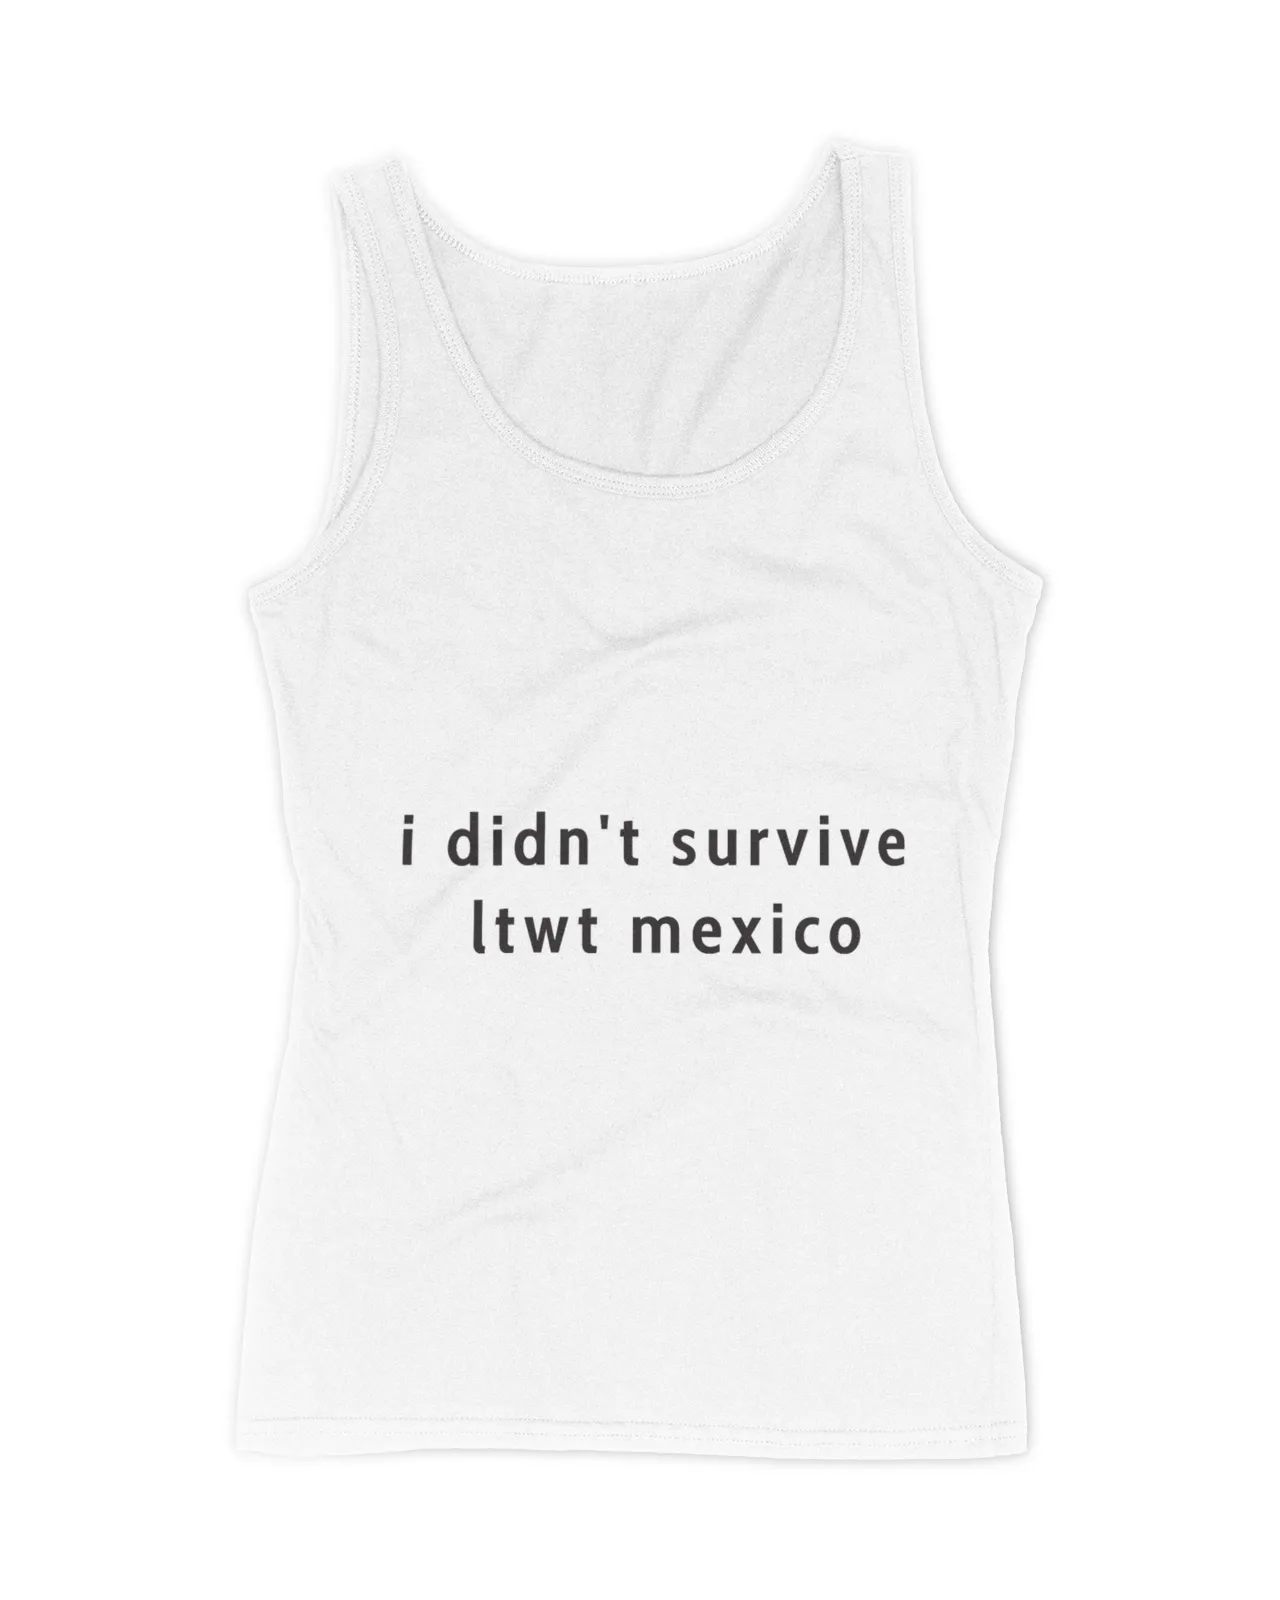 I Didn't Survive Ltwt Mexico Shirt